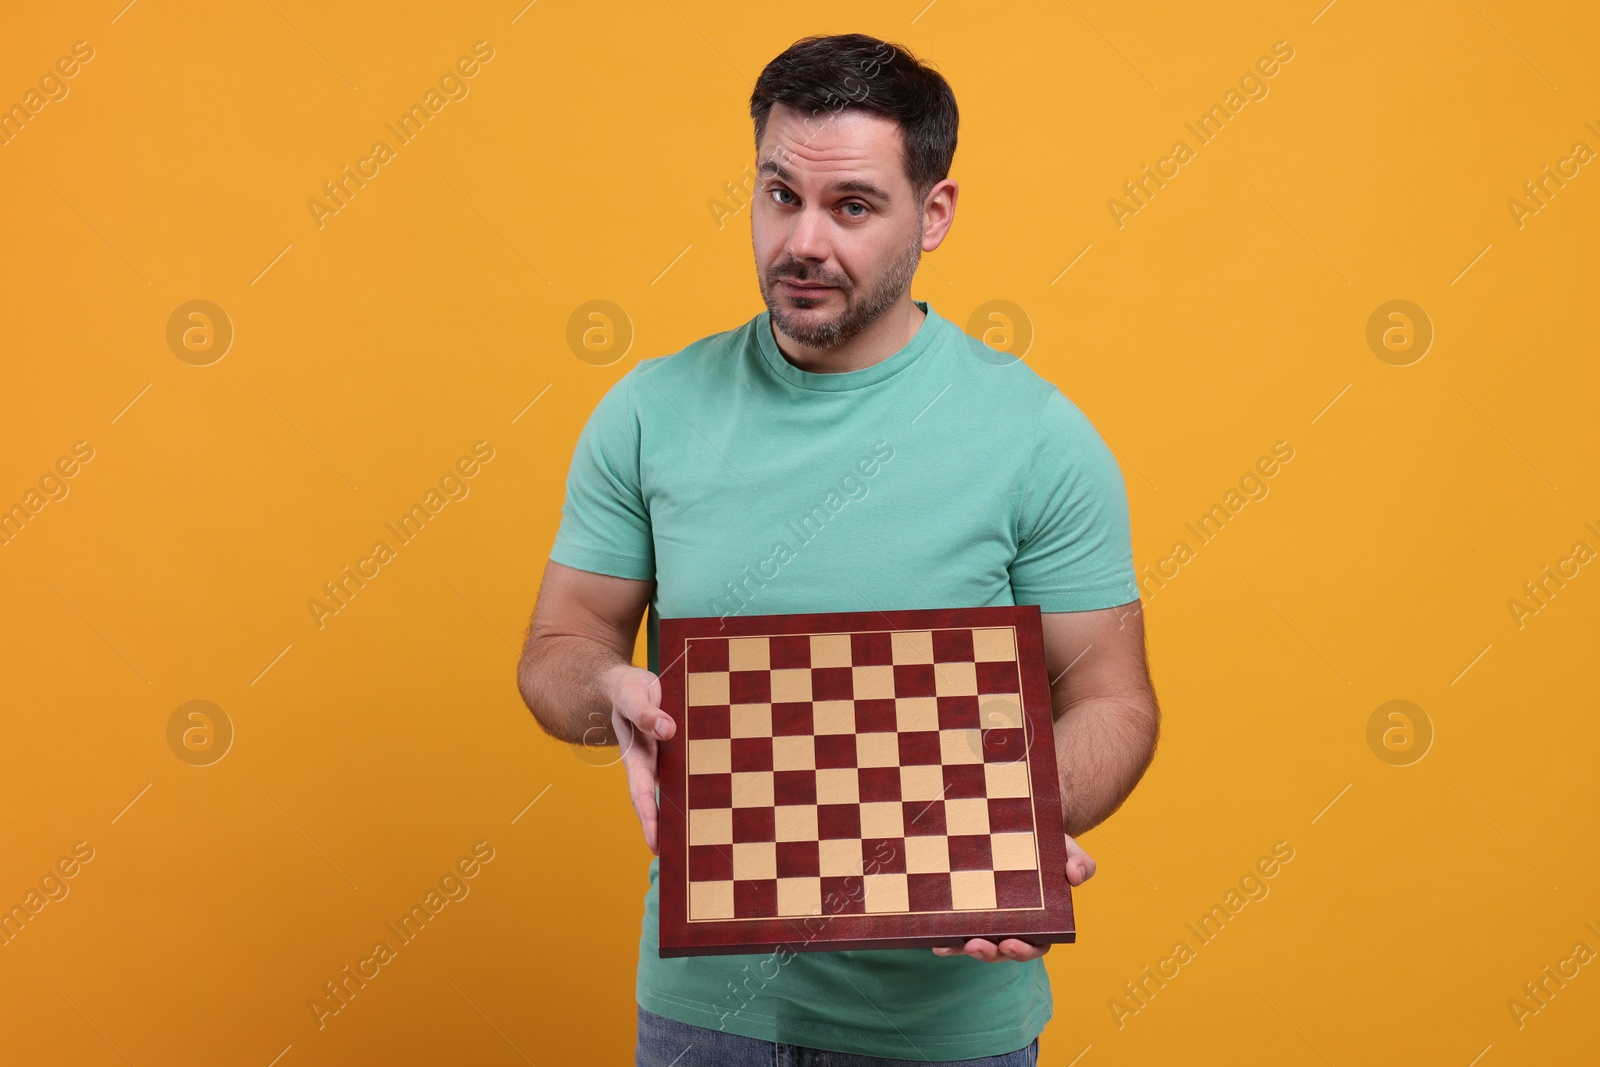 Photo of Adult man holding chessboard on orange background